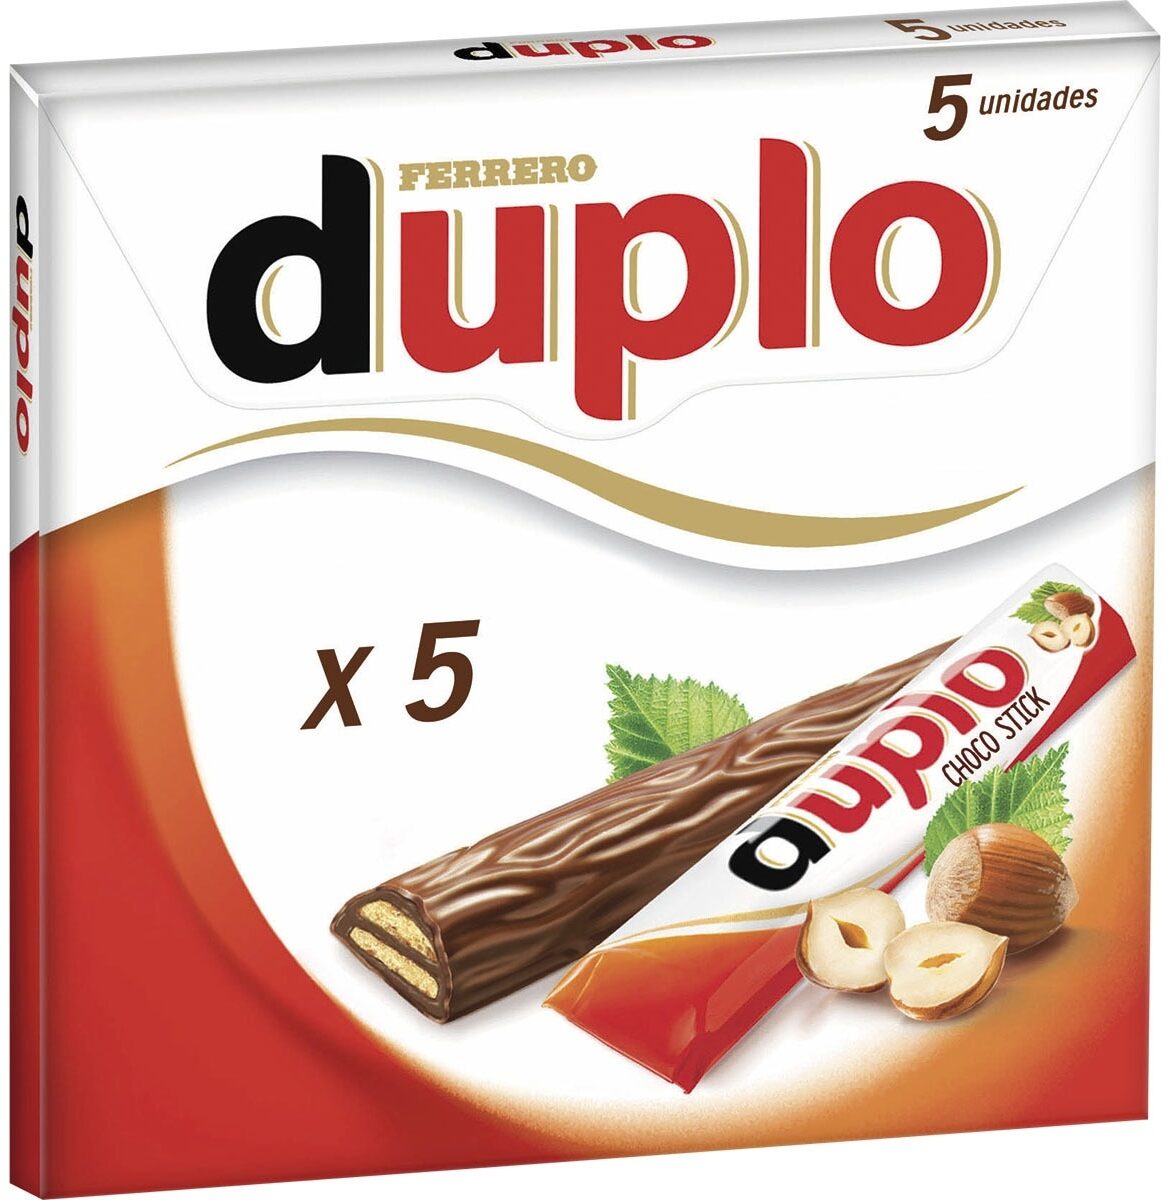 Duplo - Producte - de